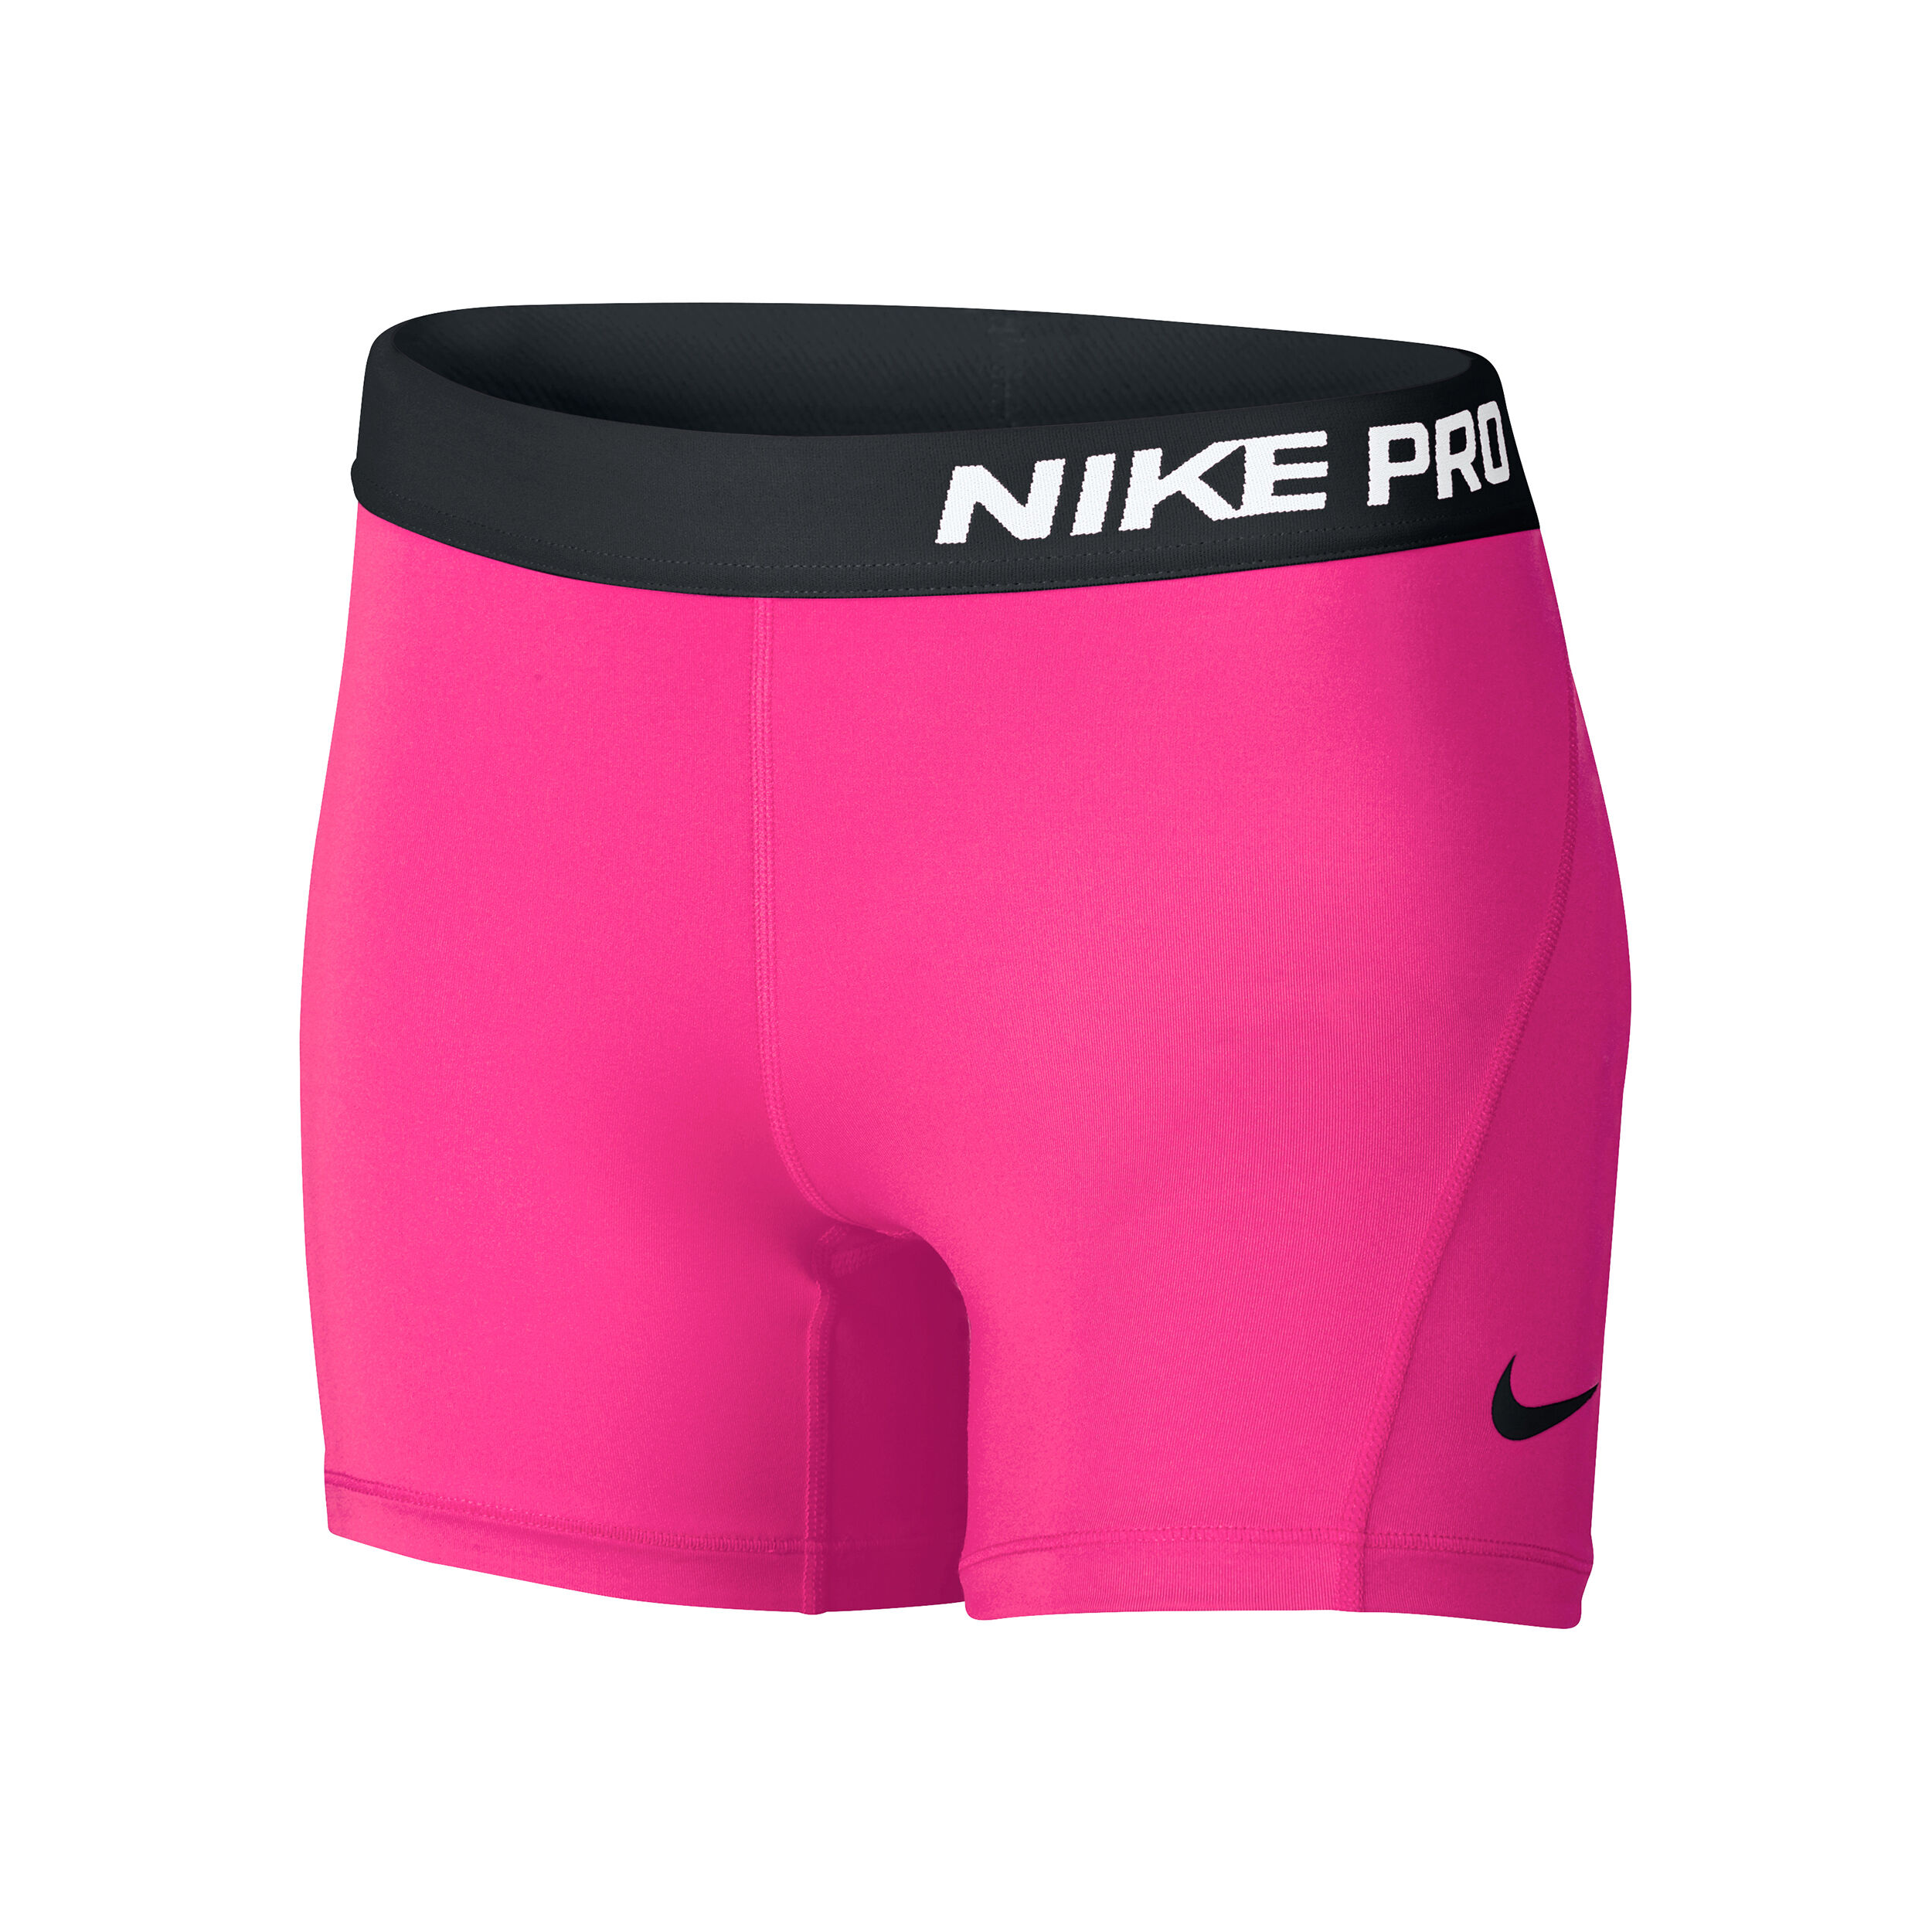 Шорты найк про. Шорты Nike Womens Pro 3 черный розовый. Шорты найк для девочек. Shorts Nike Sportswear Alumni shorts Pink. Велошорты мужские Nike Pro.